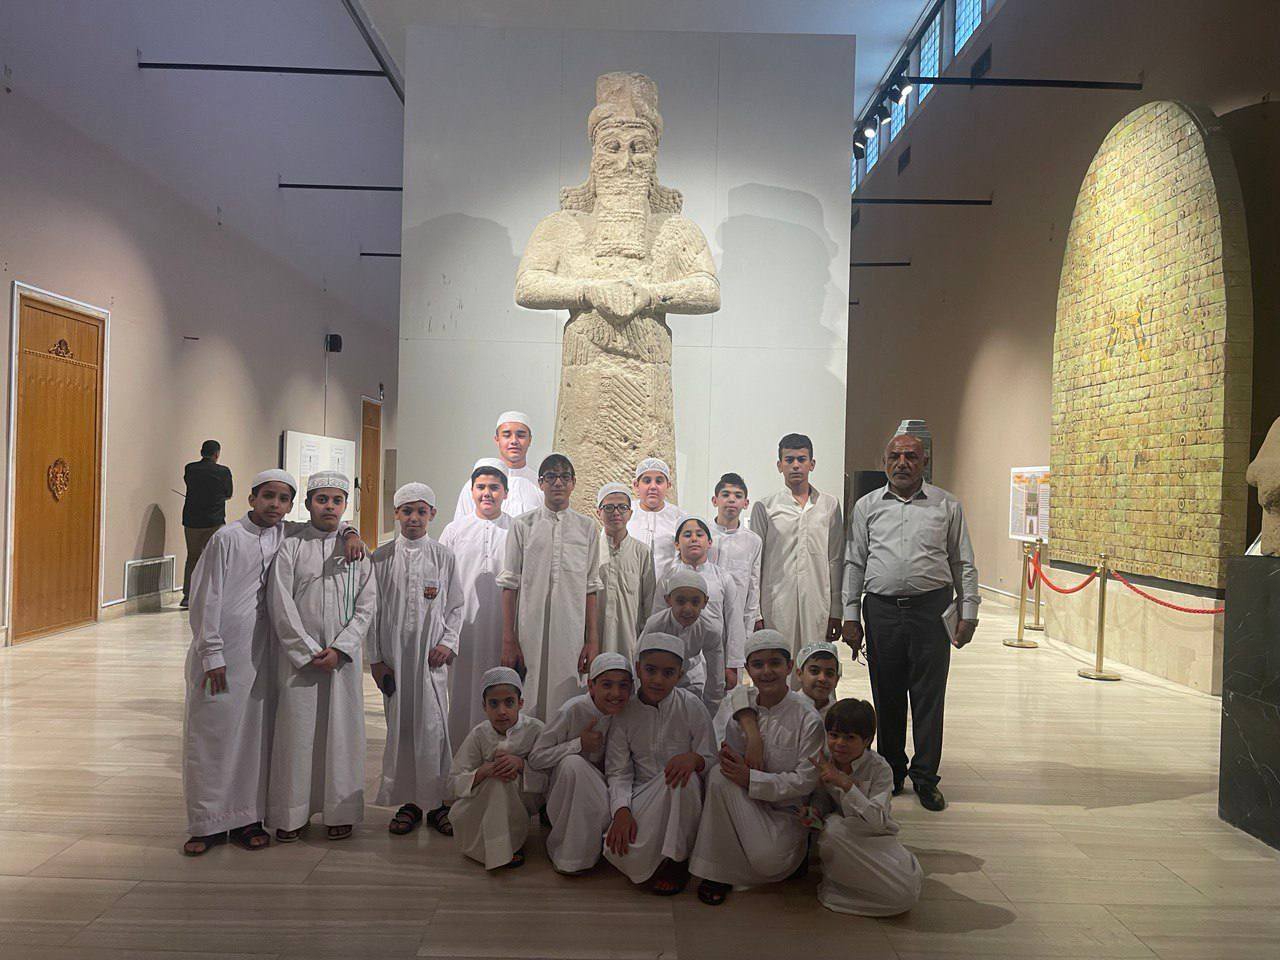 المتحف الوطني العراقي يشهد زيارة لطلبة الدورات الصيفية في بغداد